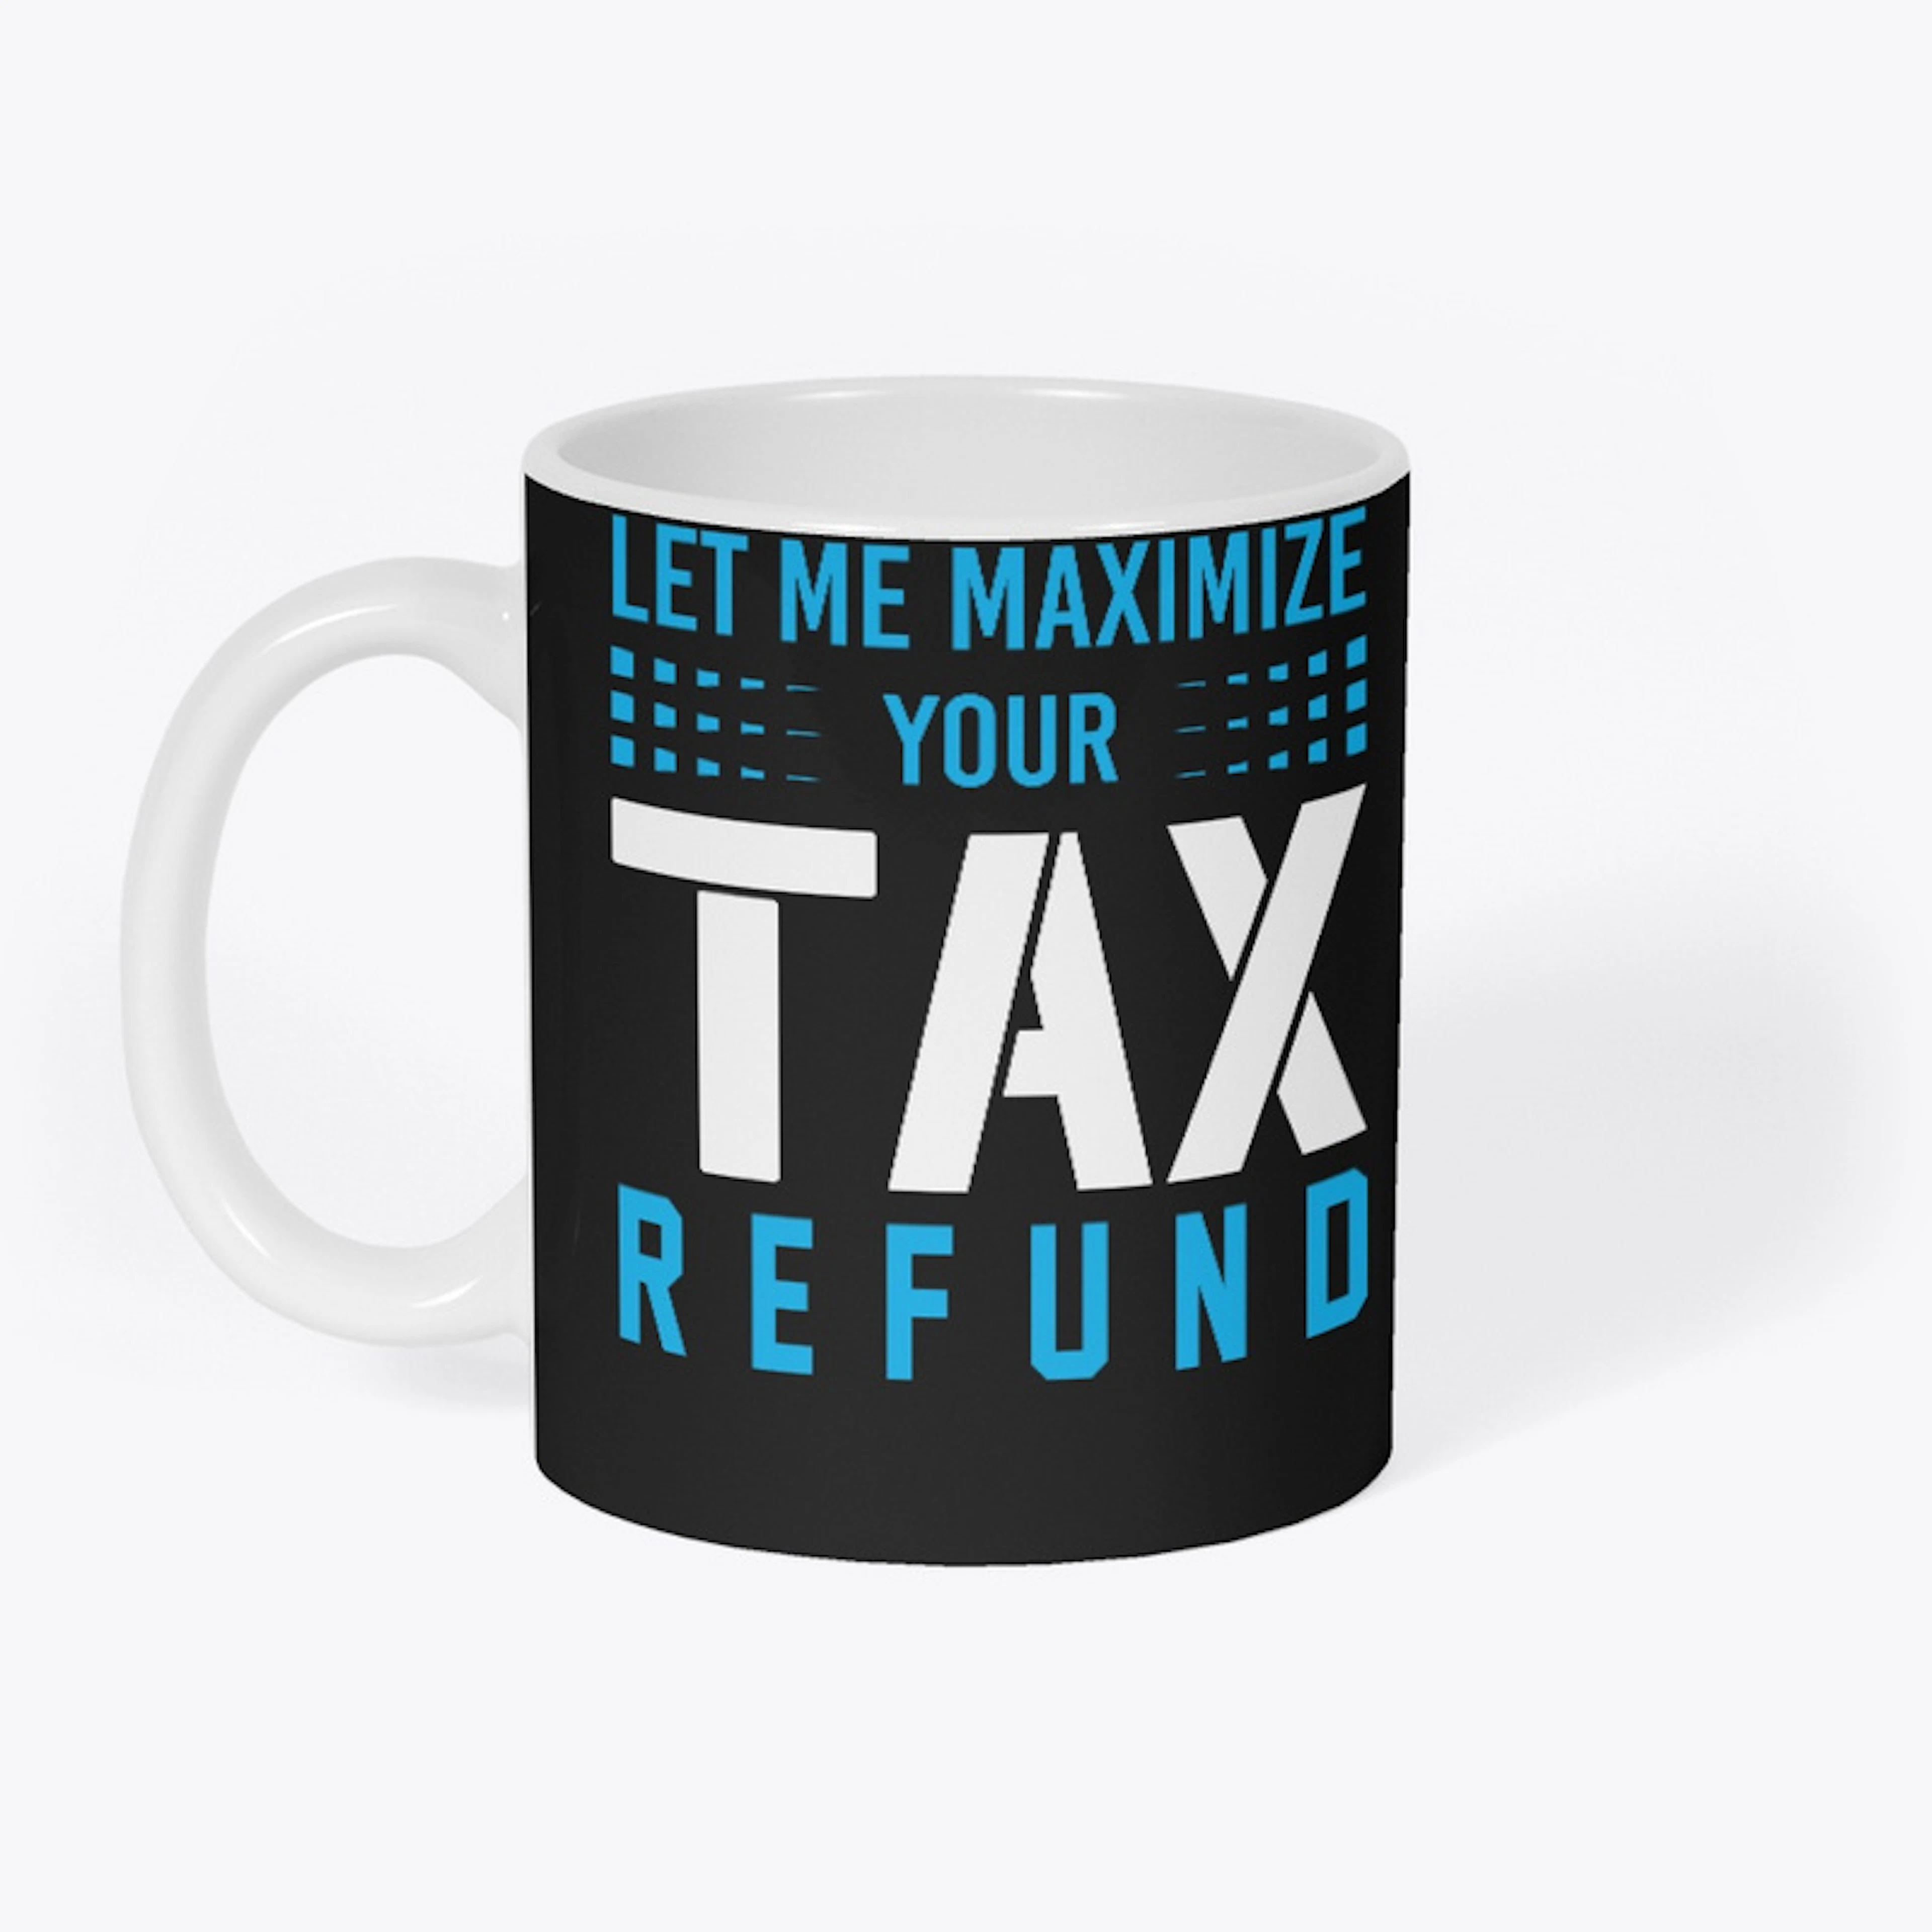 Tax Refund 